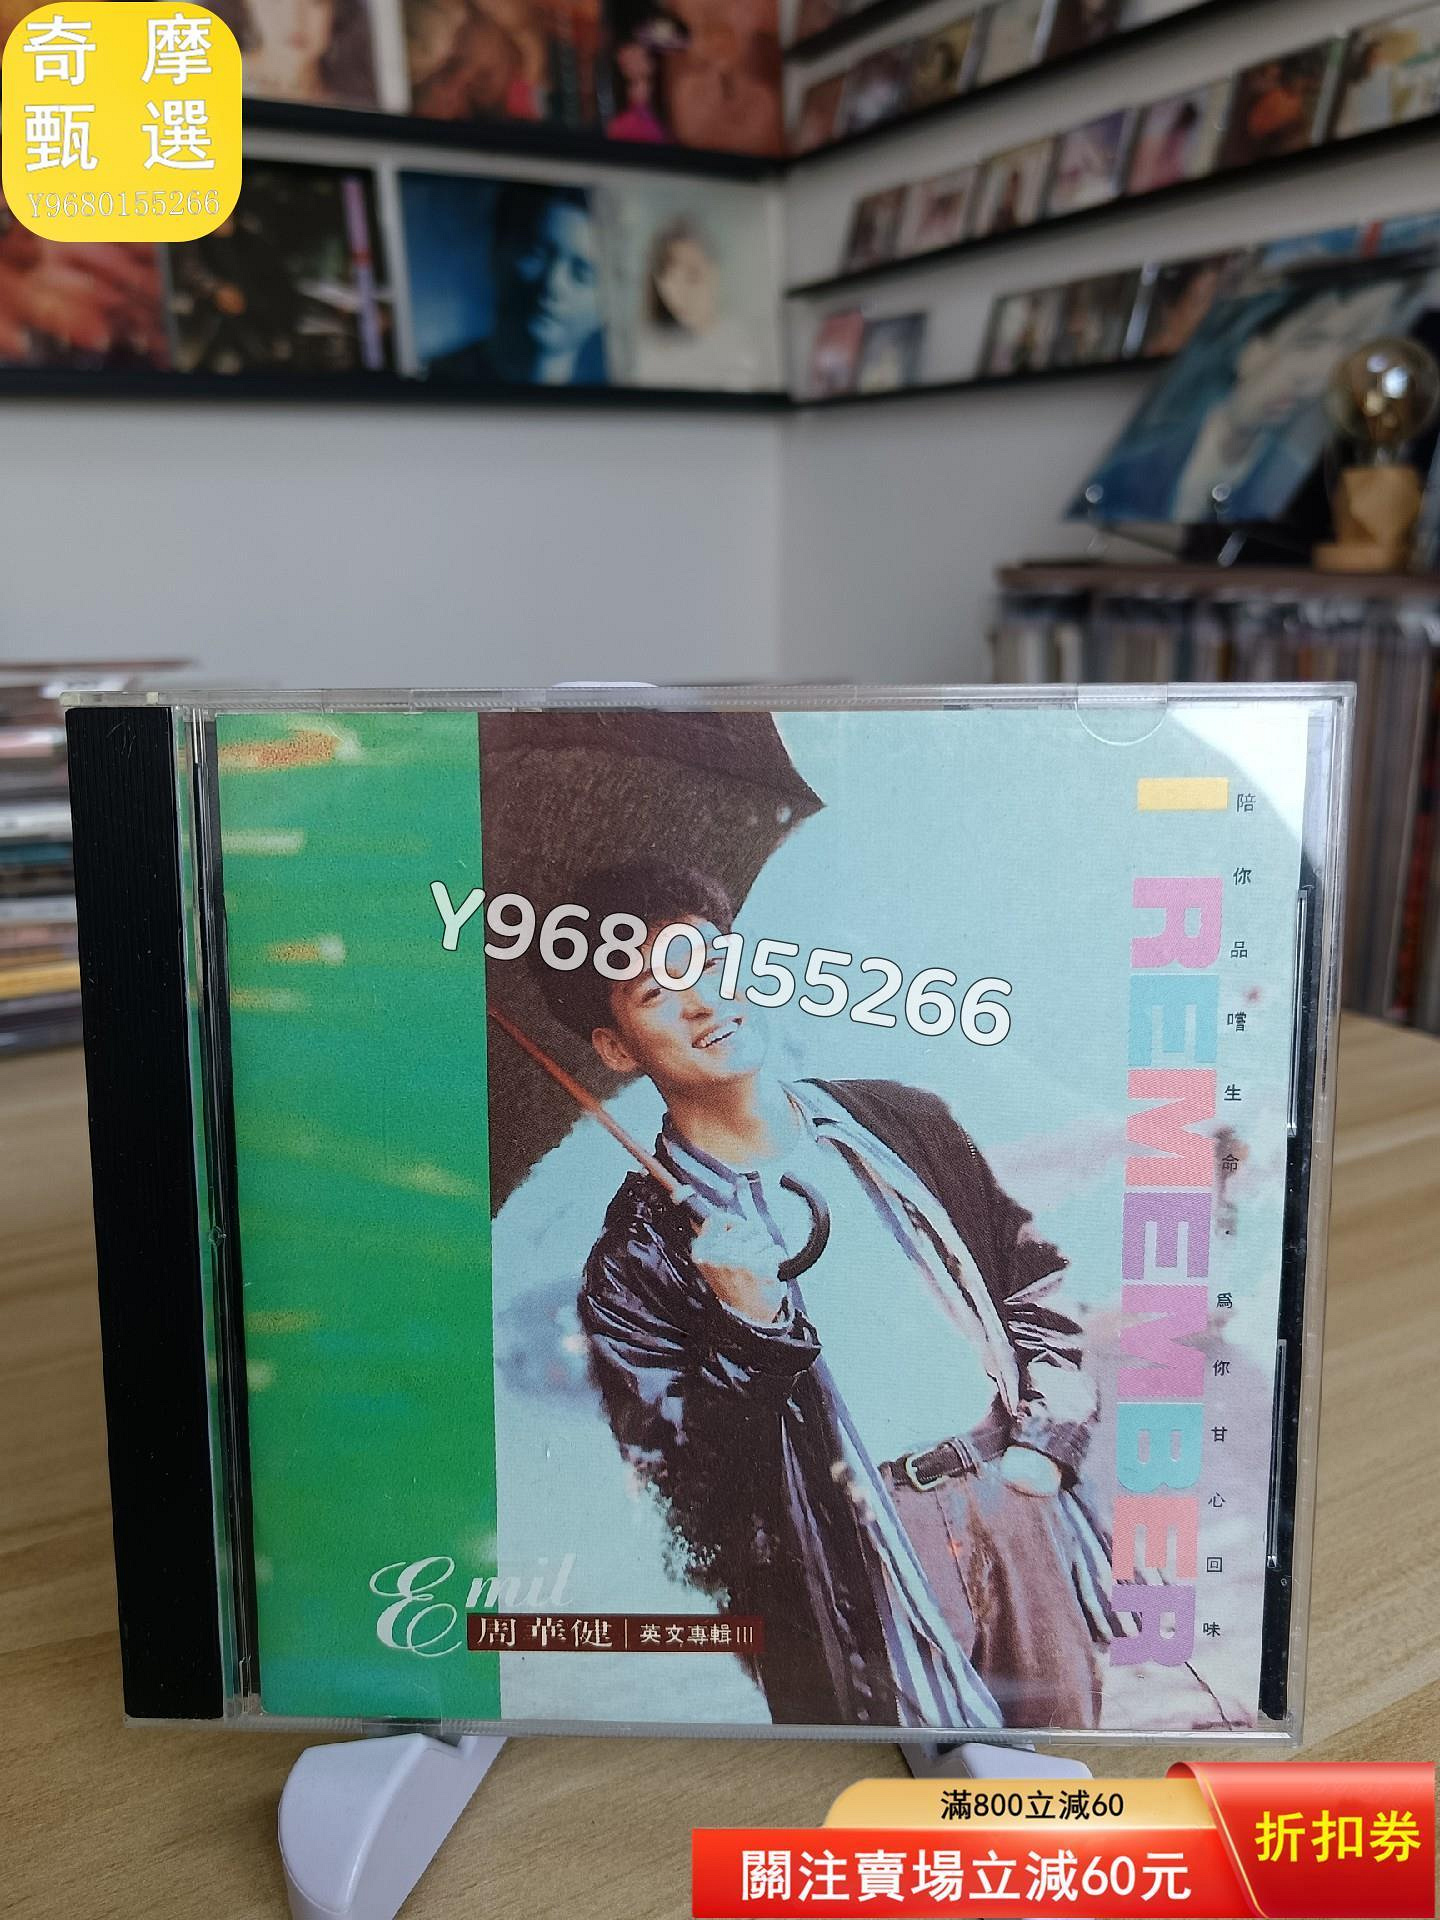 周華健 I Remember 英文專輯3 滾石首版cd 碟盤 音樂 流行 正版【奇摩甄選】854